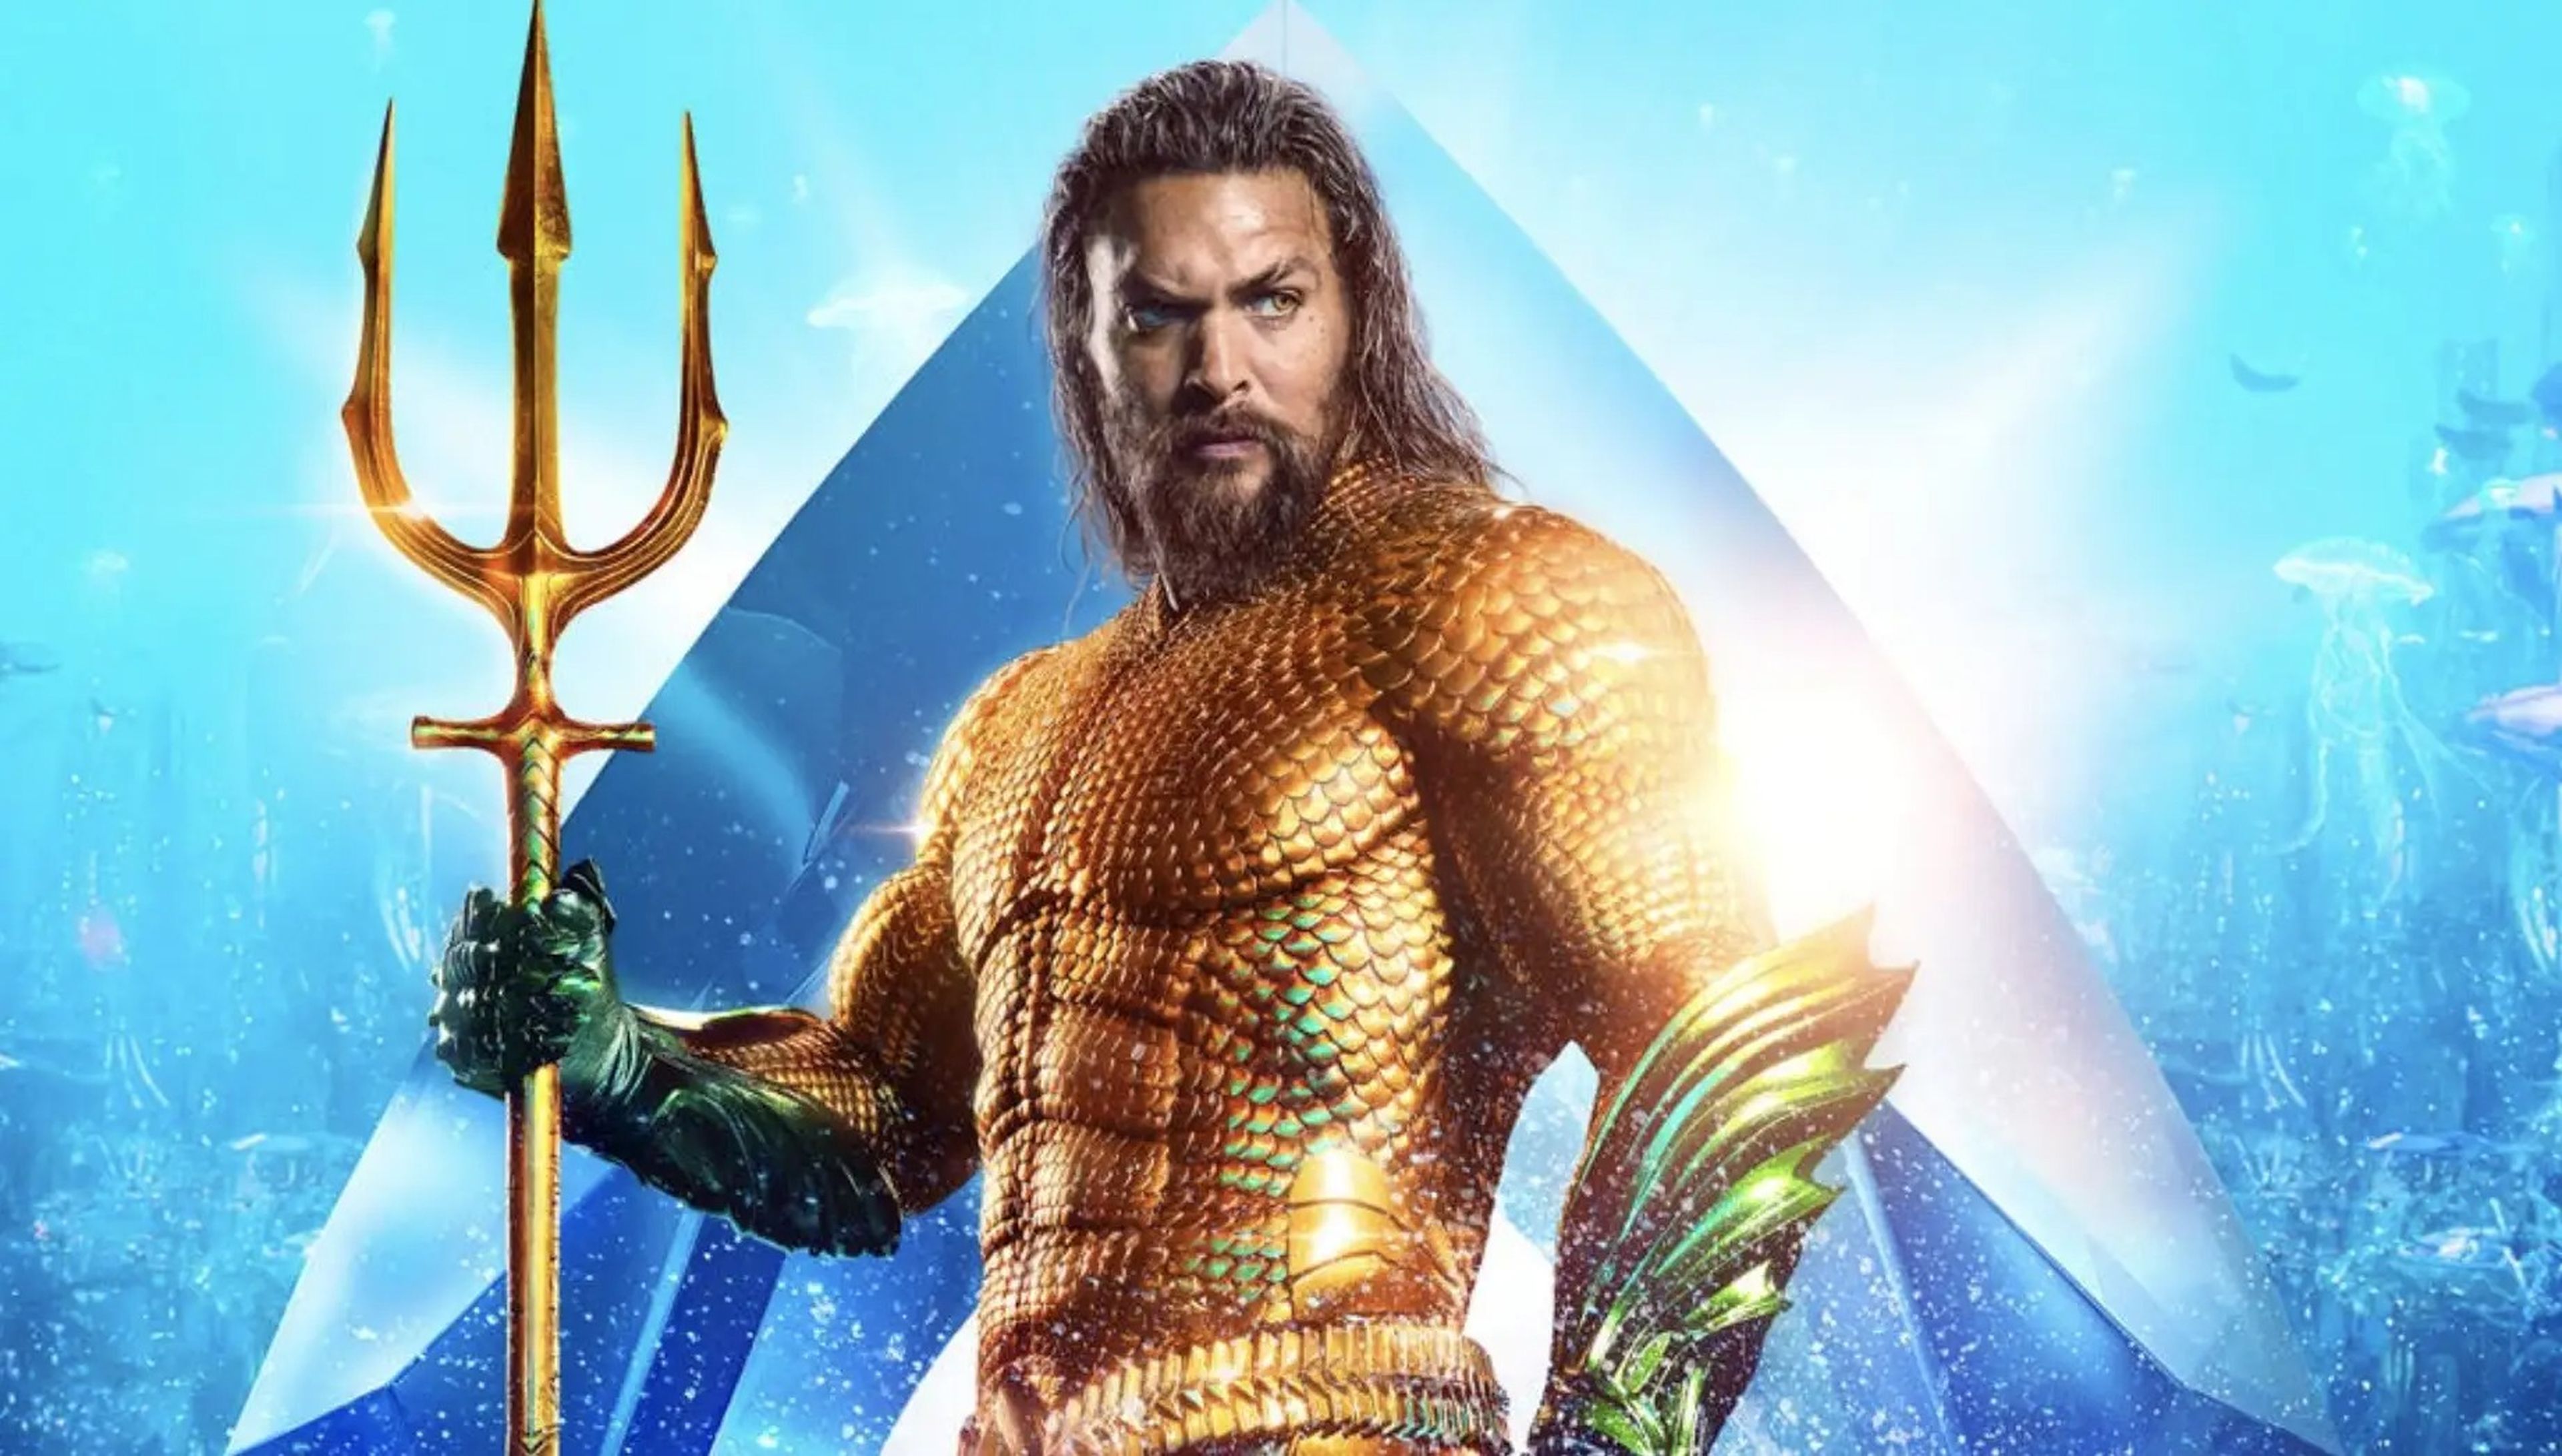 La primera película de 'Aquaman' recaudó más de 1.100 millones de dólares en taquilla (nos 973 millones de euros).